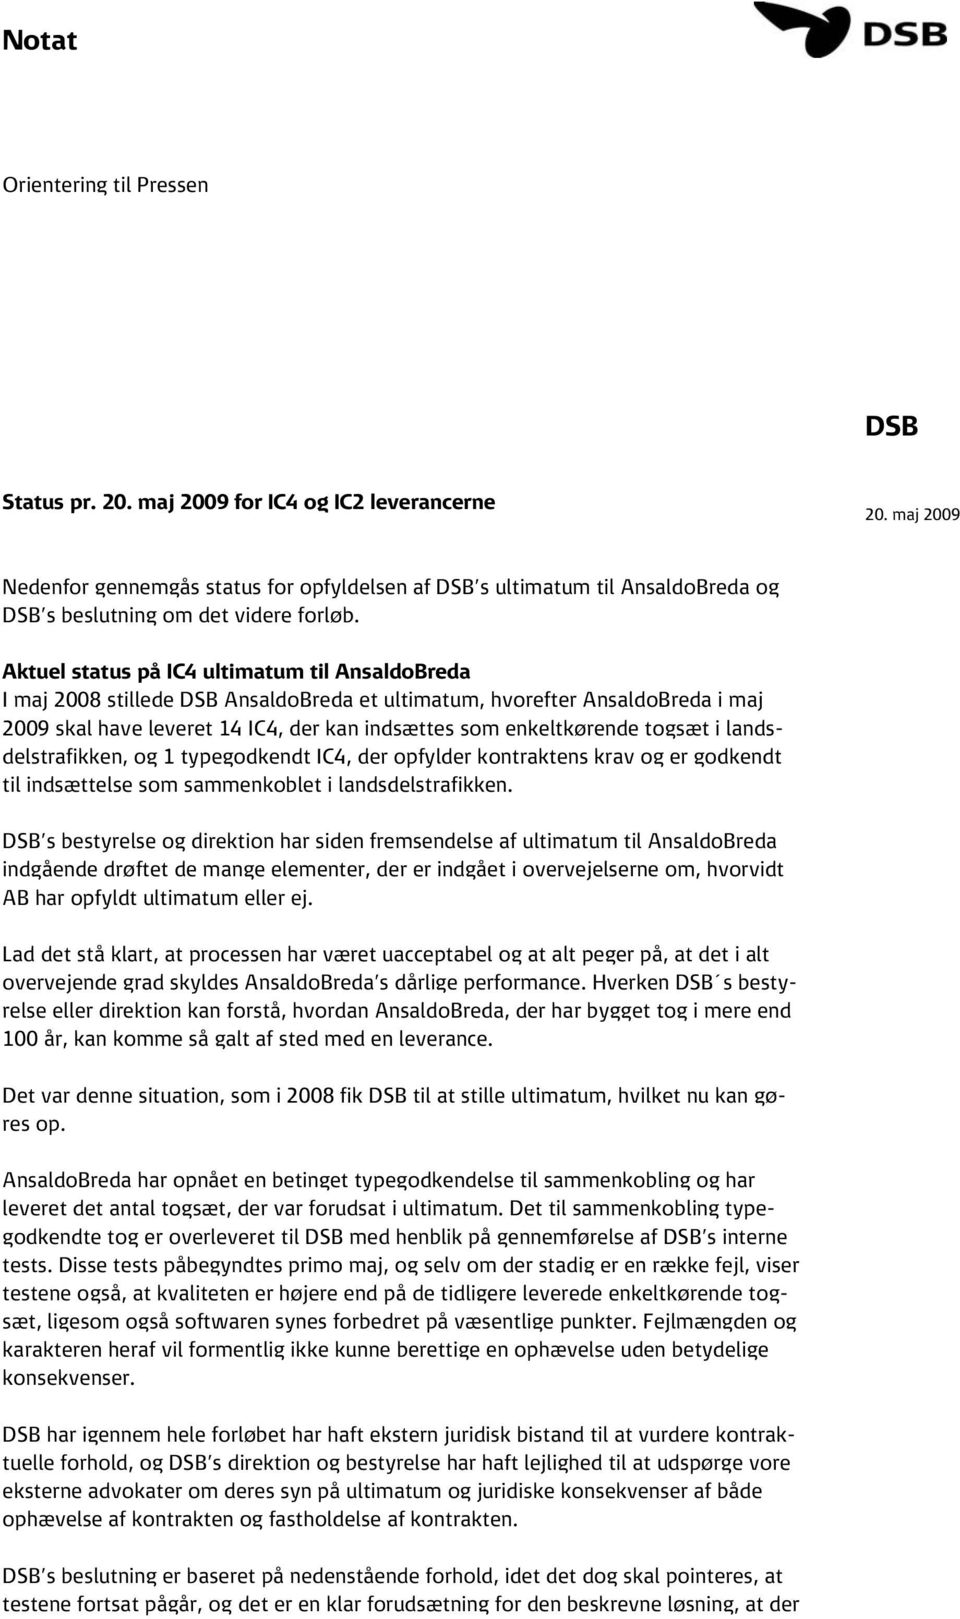 Aktuel status på IC4 ultimatum til AnsaldoBreda I maj 2008 stillede DSB AnsaldoBreda et ultimatum, hvorefter AnsaldoBreda i maj 2009 skal have leveret 14 IC4, der kan indsættes som enkeltkørende